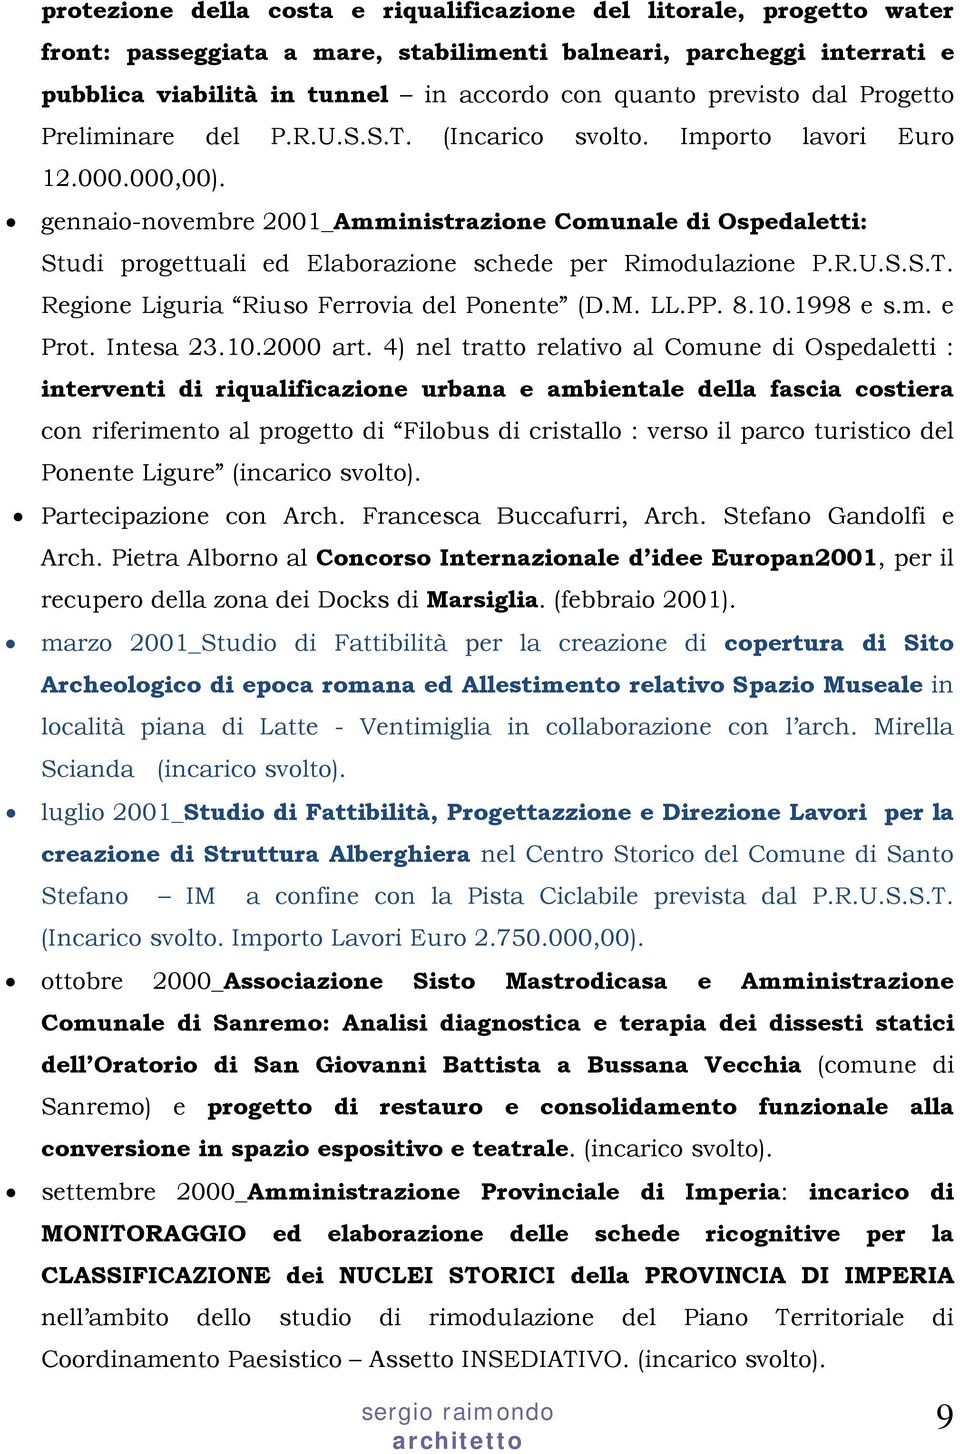 gennaio-novembre 2001_Amministrazione Comunale di Ospedaletti: Studi progettuali ed Elaborazione schede per Rimodulazione P.R.U.S.S.T. Regione Liguria Riuso Ferrovia del Ponente (D.M. LL.PP. 8.10.